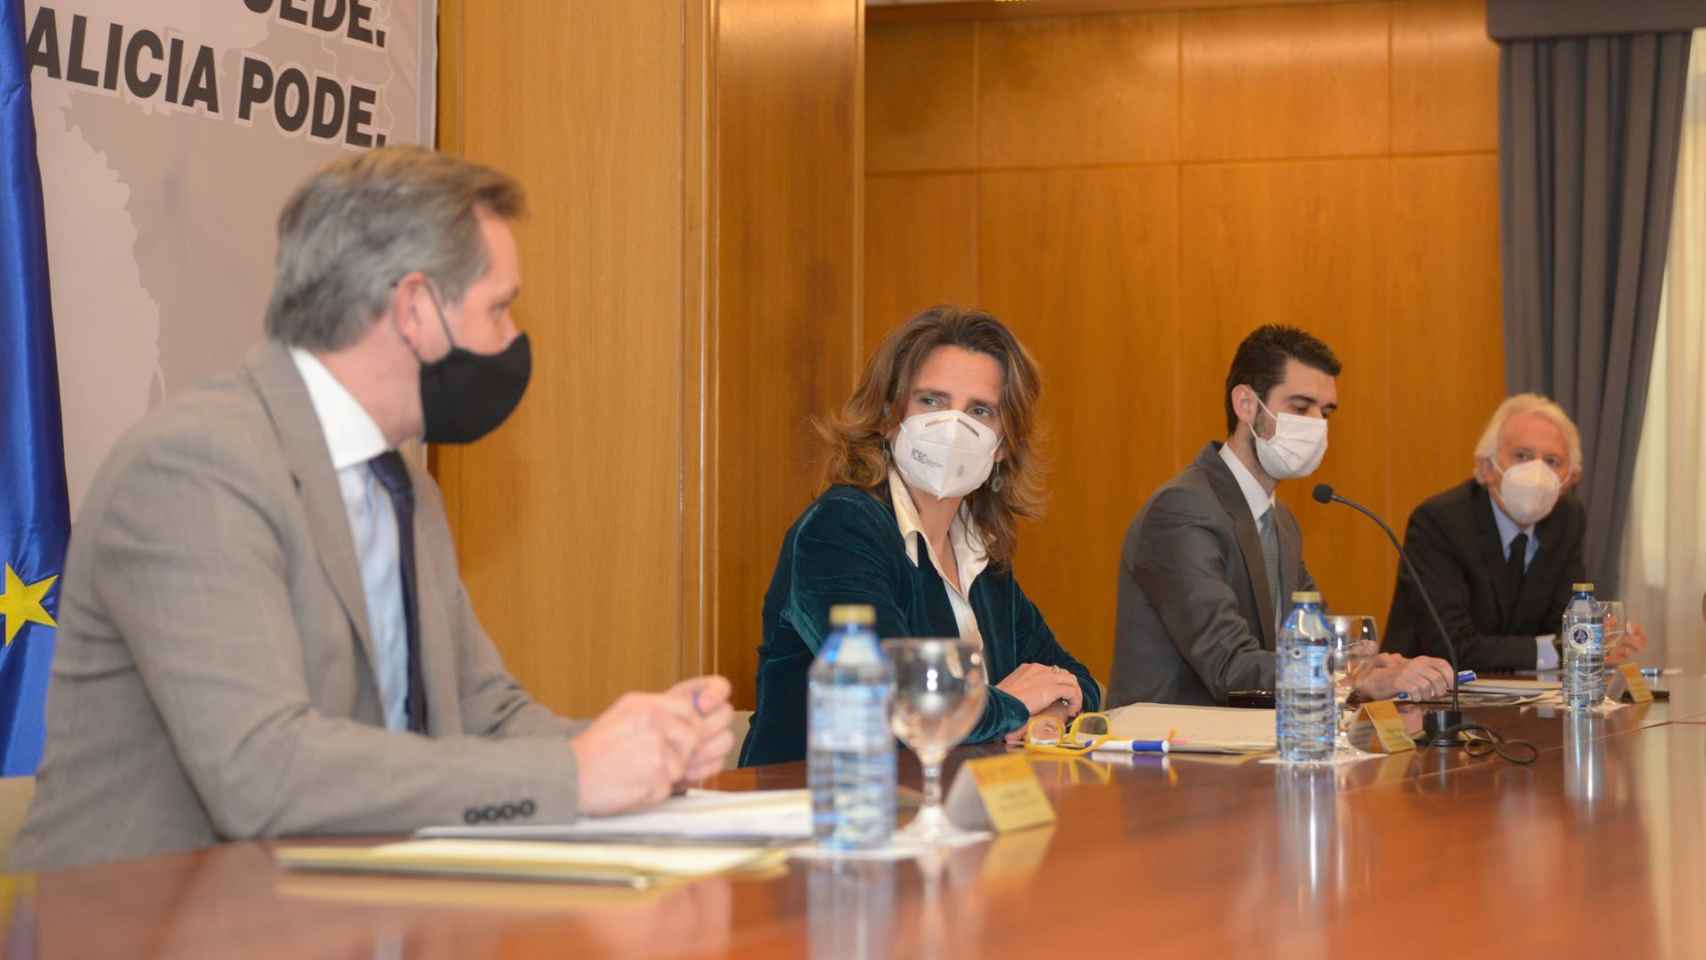 La ministra para la Transición Ecológica, Teresa Ribera, y el delegado del Gobierno en Galicia, José Miñones, participan en una reunión con empresarios.